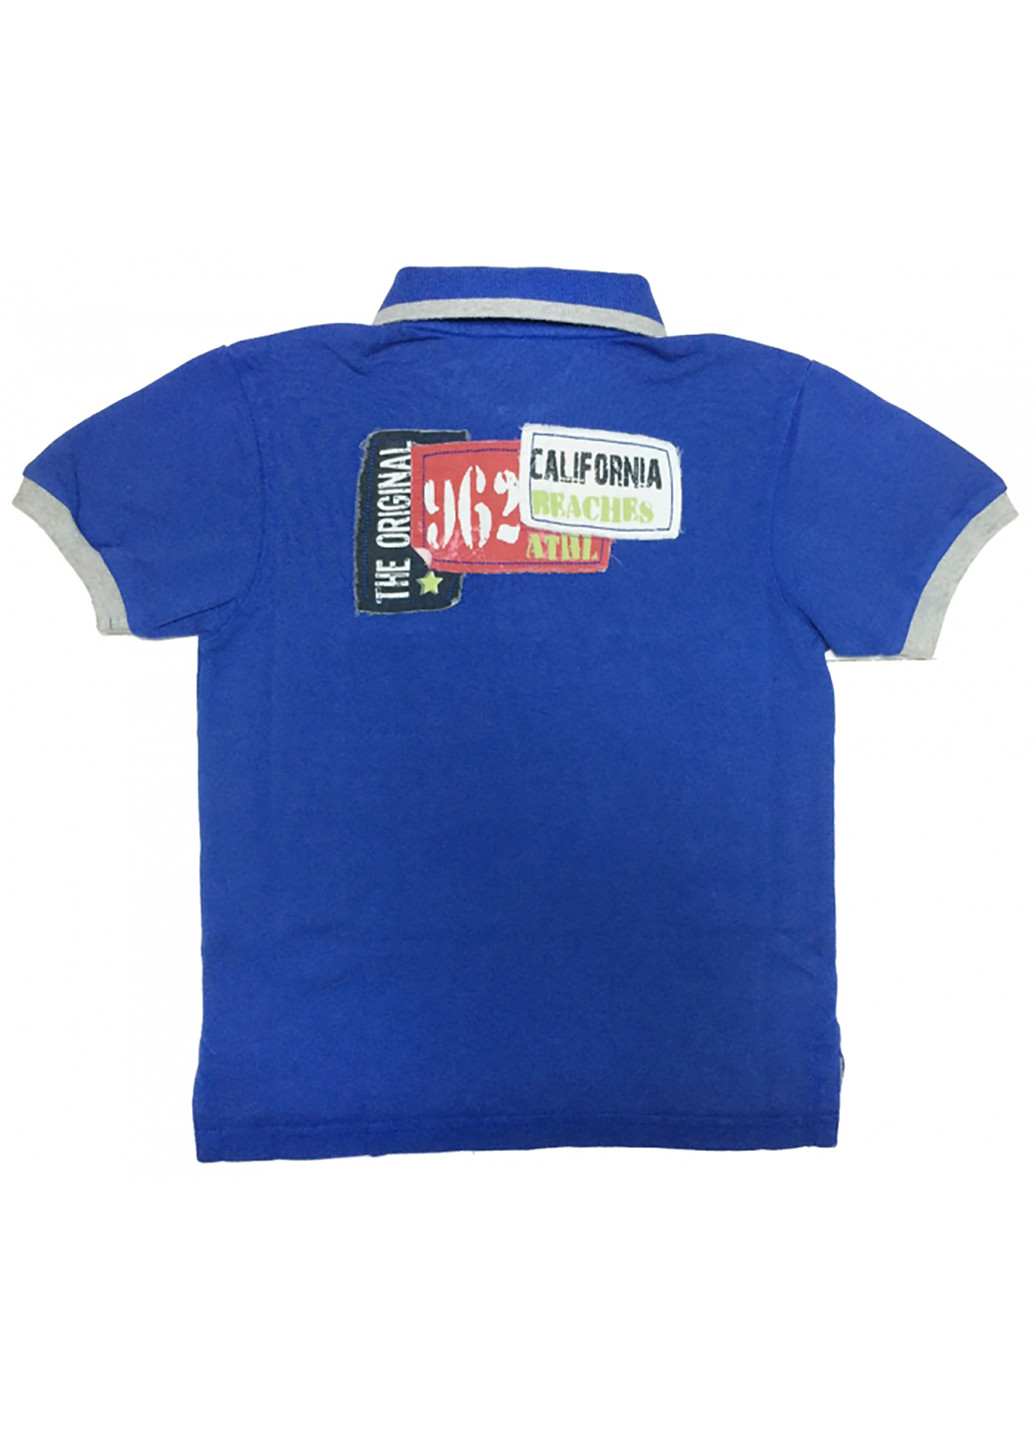 Синяя детская футболка-поло для мальчика B-Karo с надписью